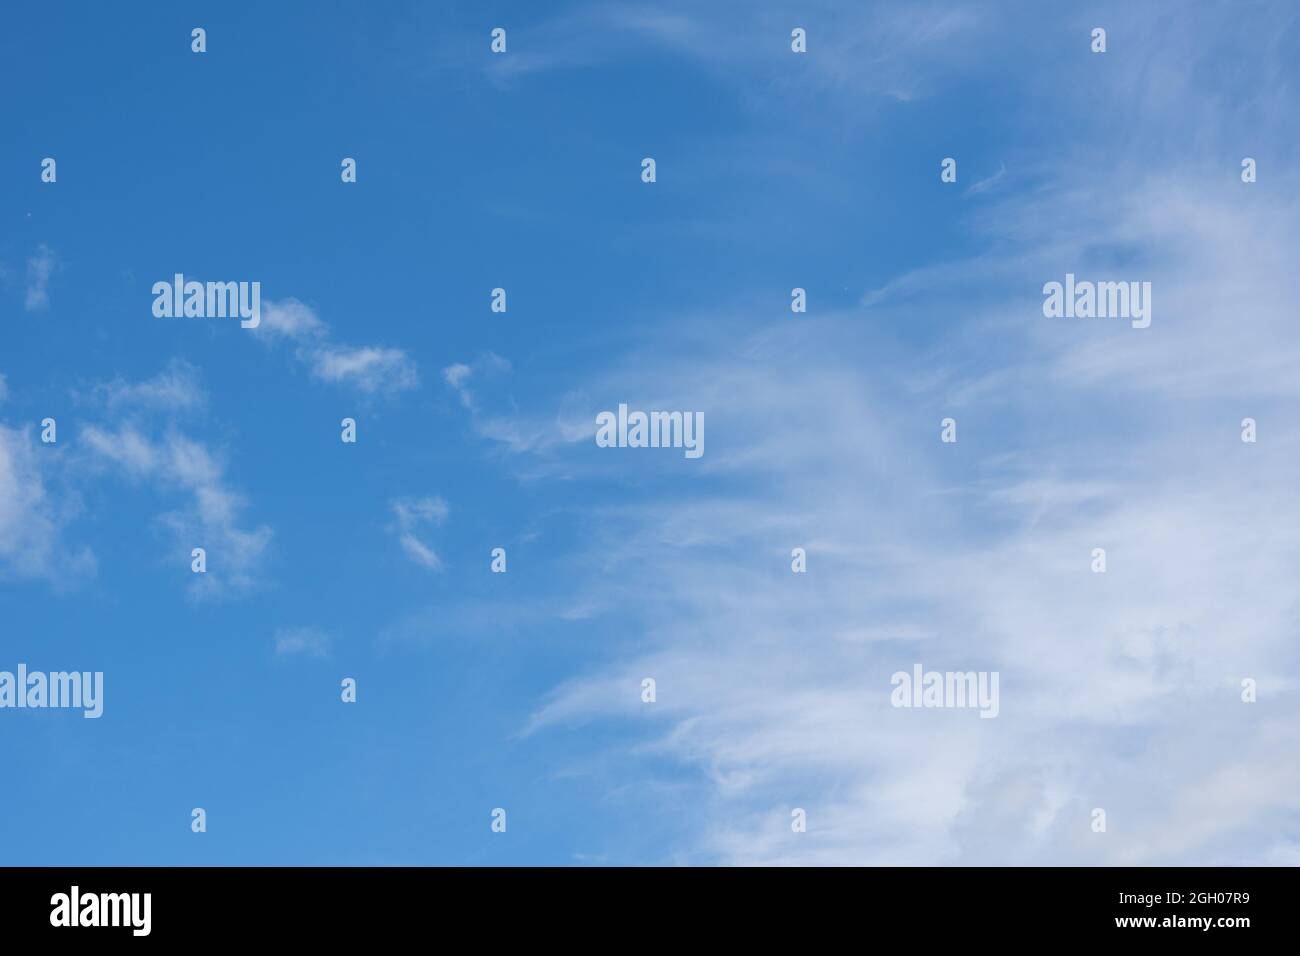 Wunderschöne Zirruswolken am blauen Morgenhimmel. Hintergrund des blauen Himmels und weißen Zirruswolken im Sommer für Ihre Fotos, Nachbau für Design. Stockfoto